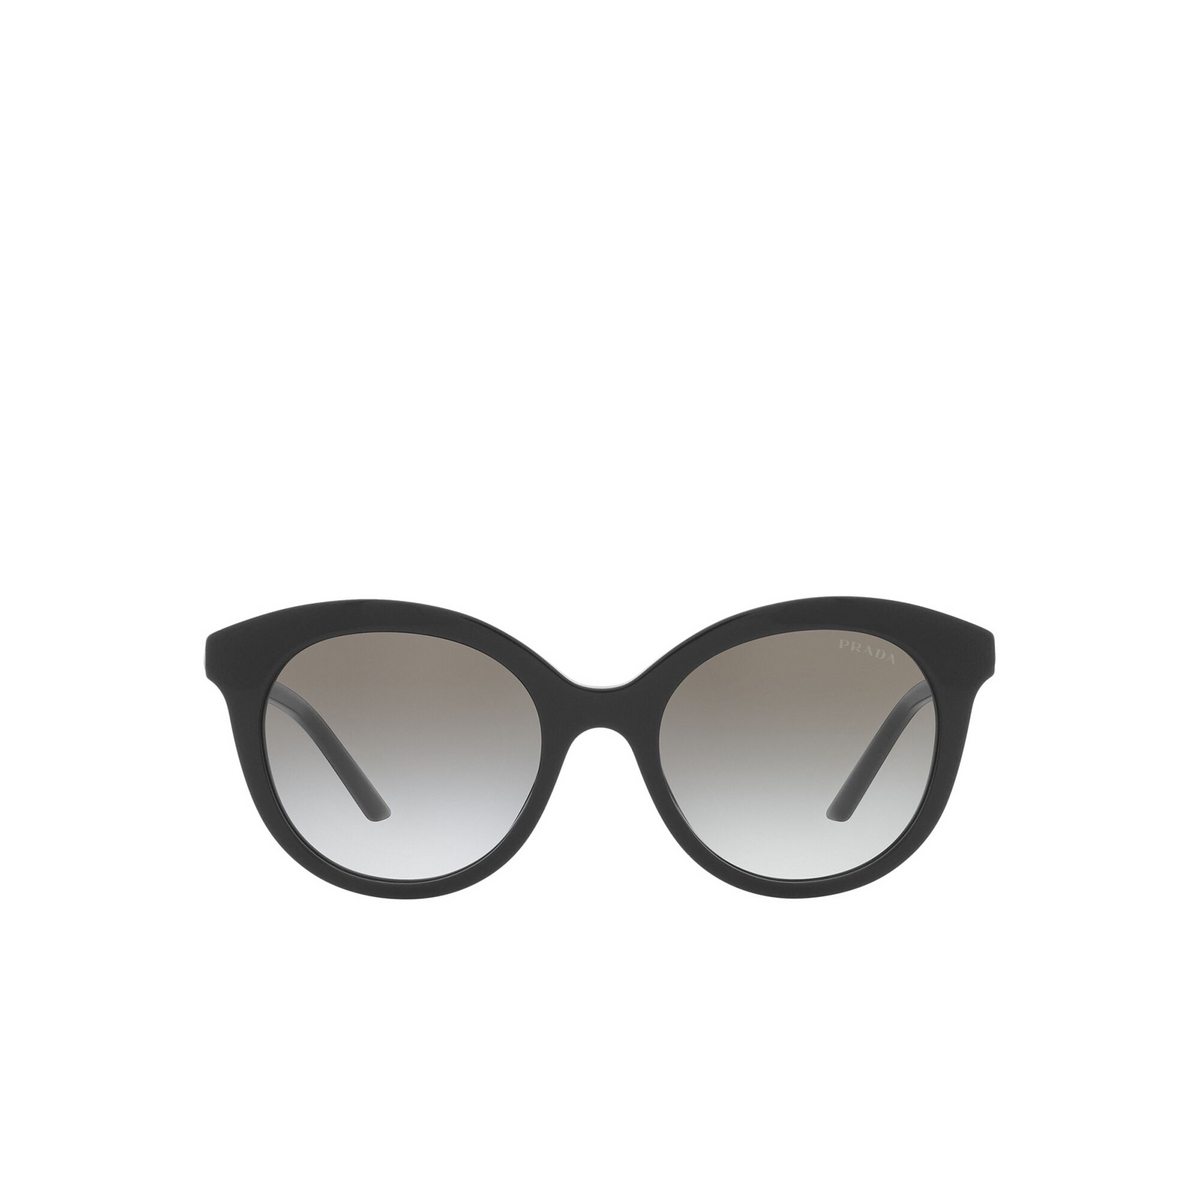 Prada® Round Sunglasses: PR 02YS color Black 1AB0A7 - front view.